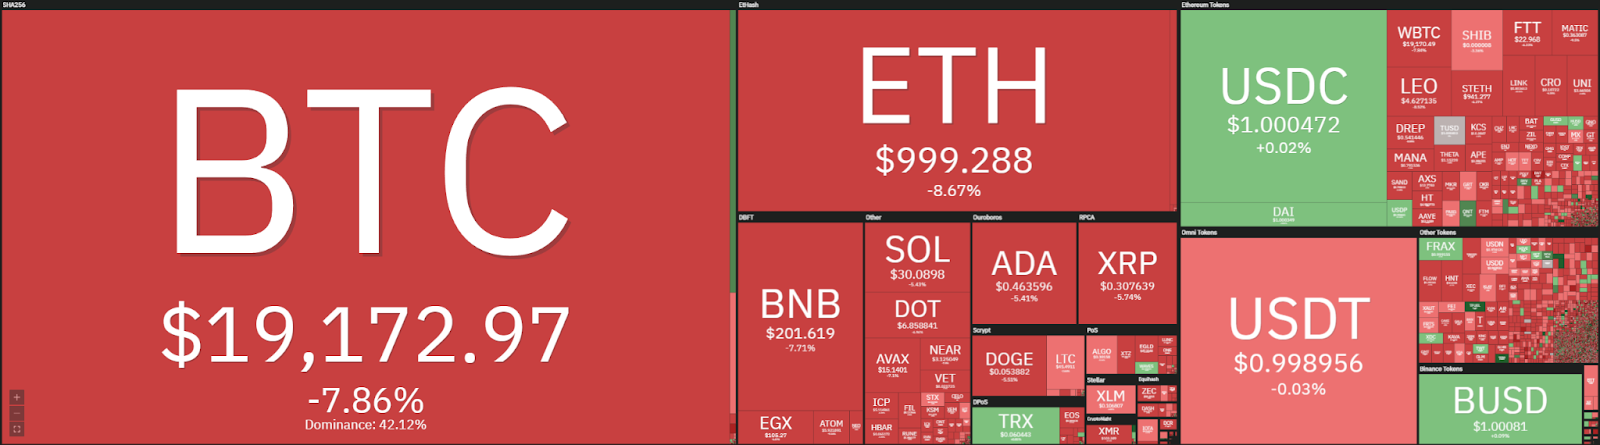 Ethereum price analysis: ETH returns to $1,000, swift break lower incoming?  1